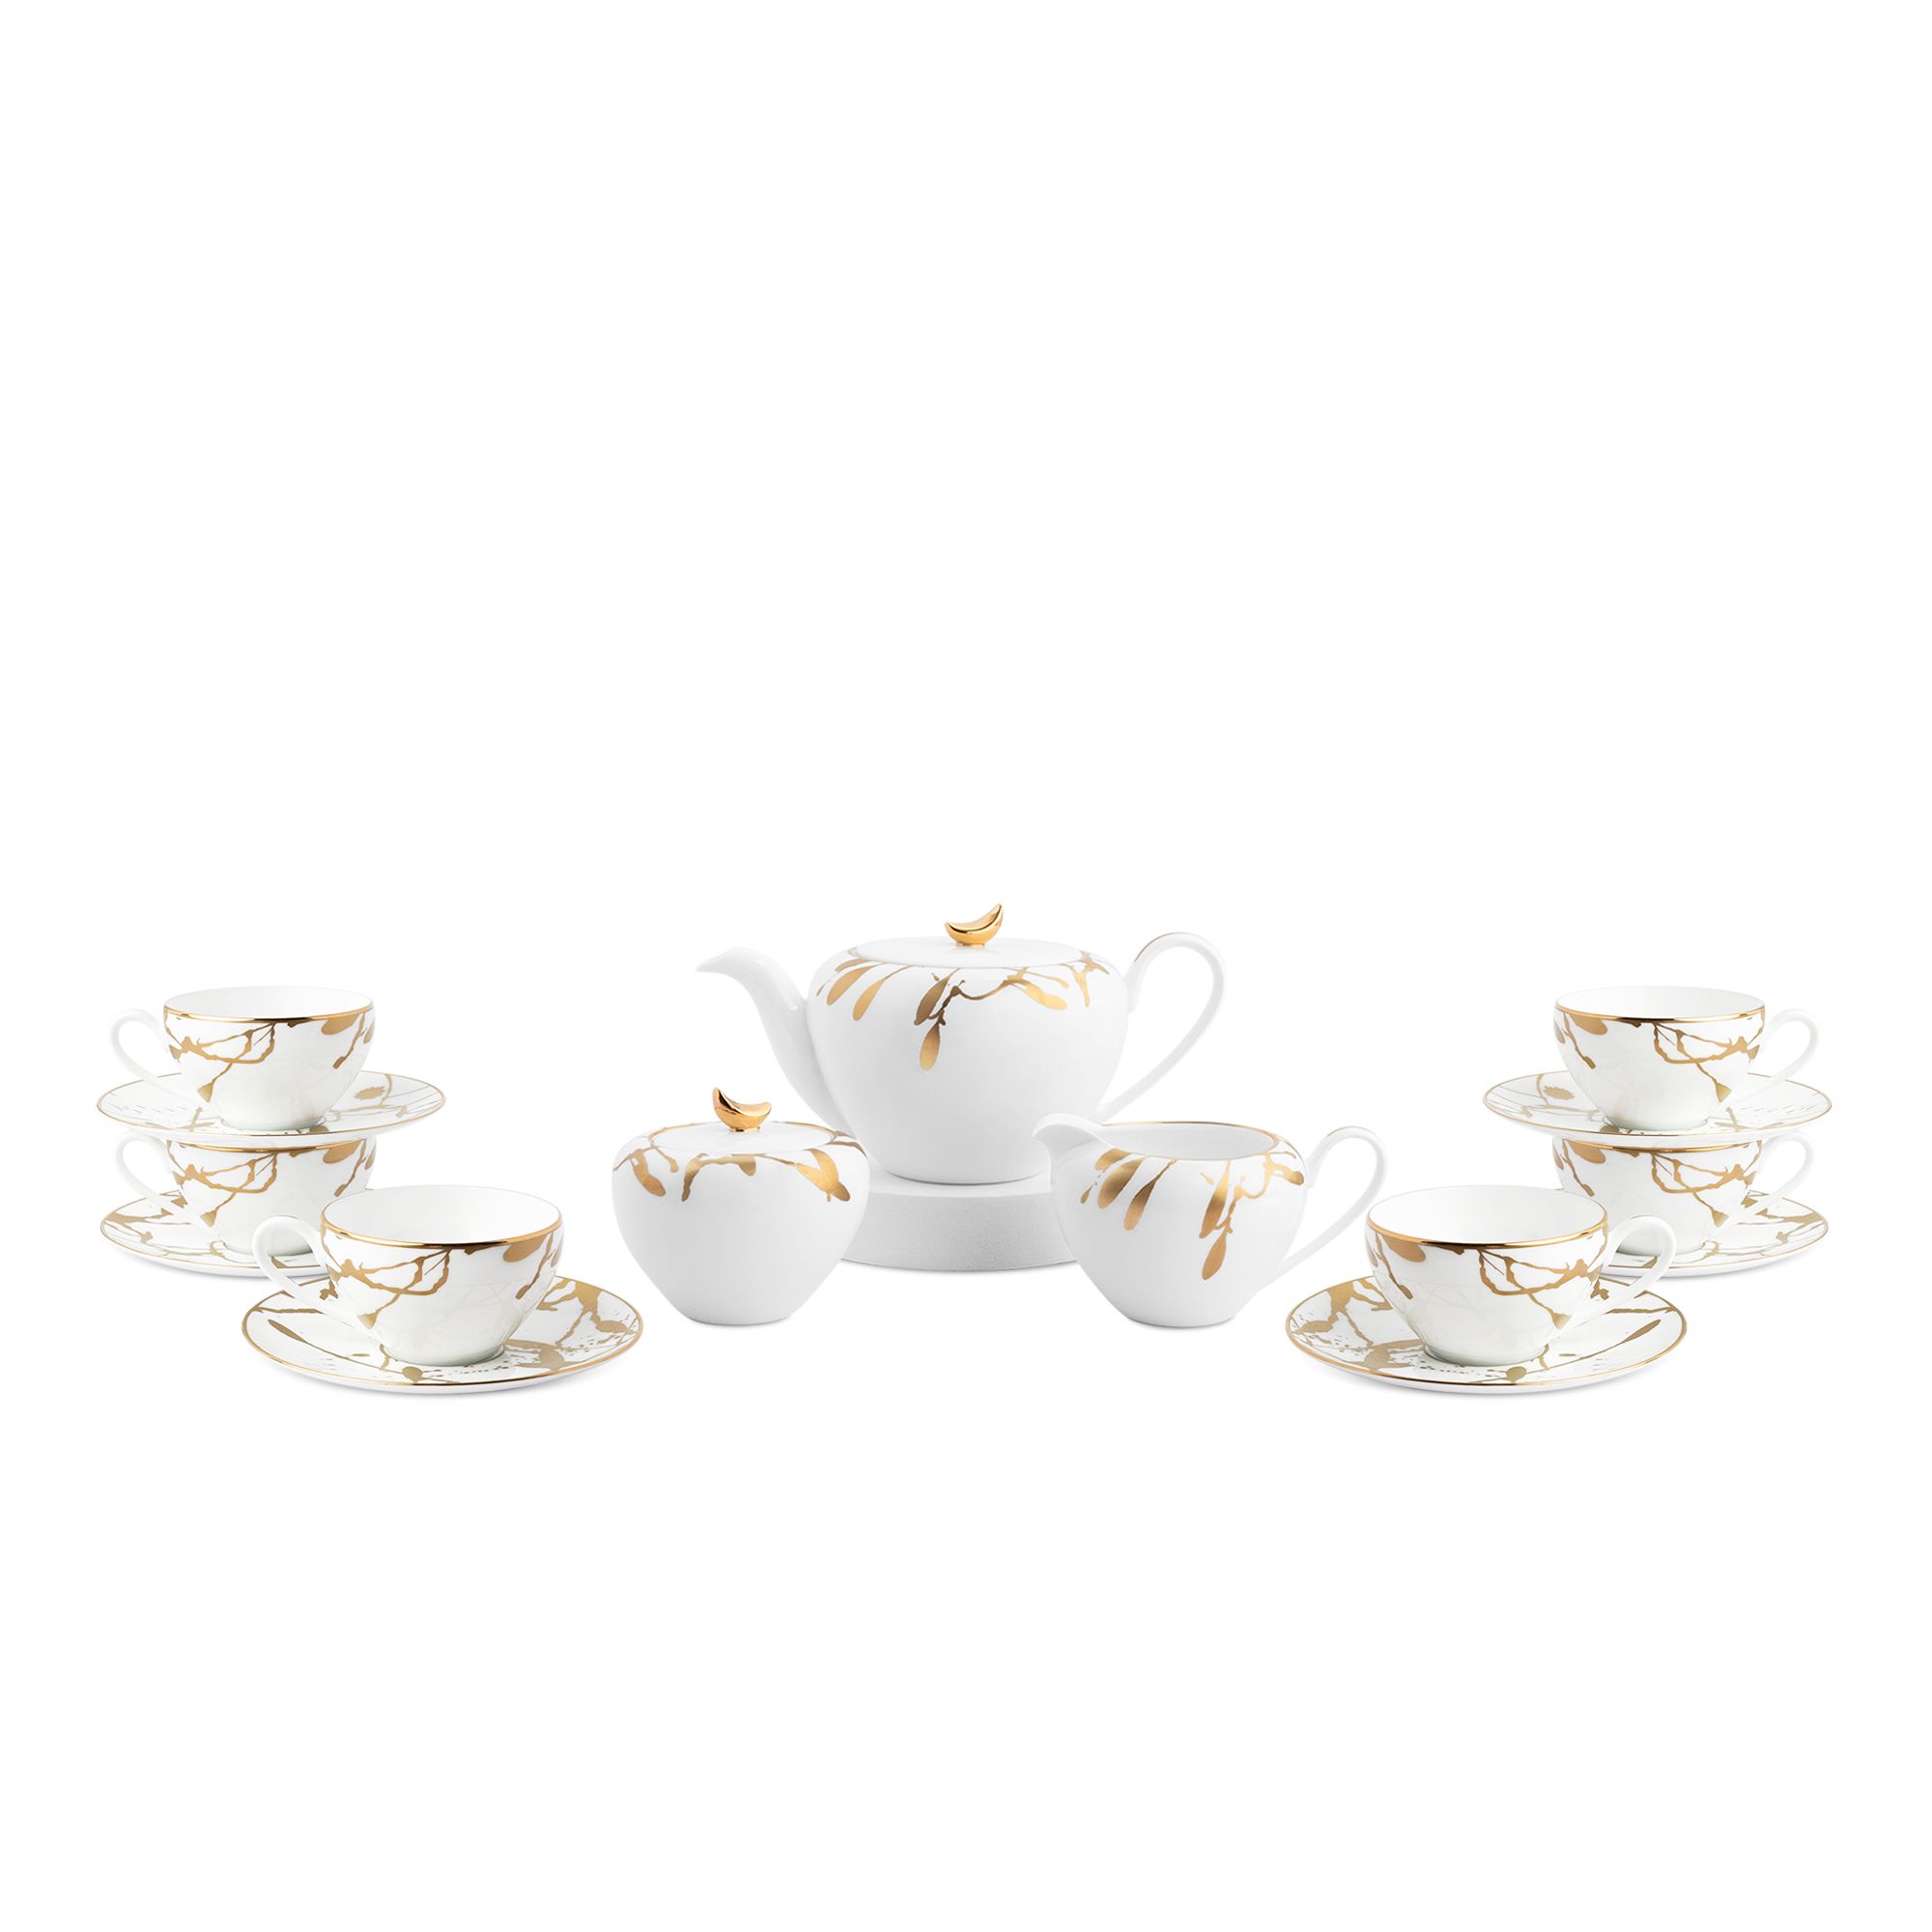  Bộ ấm chén uống trà sứ trắng cao cấp 15 món | Raptures Gold 10561L 